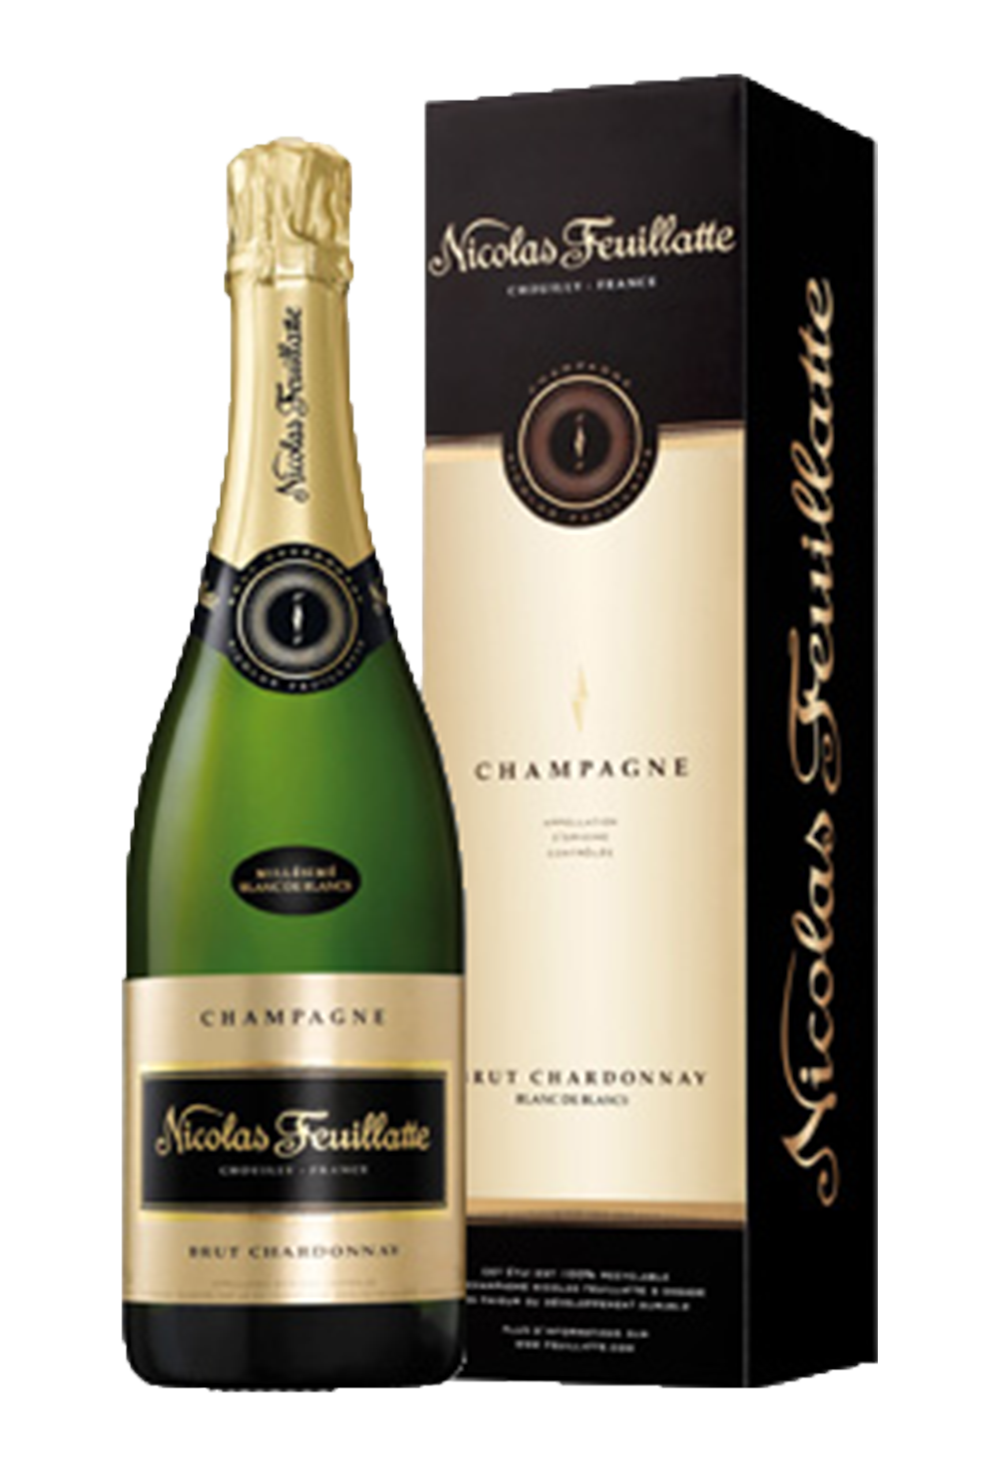 champagne krug nicolas